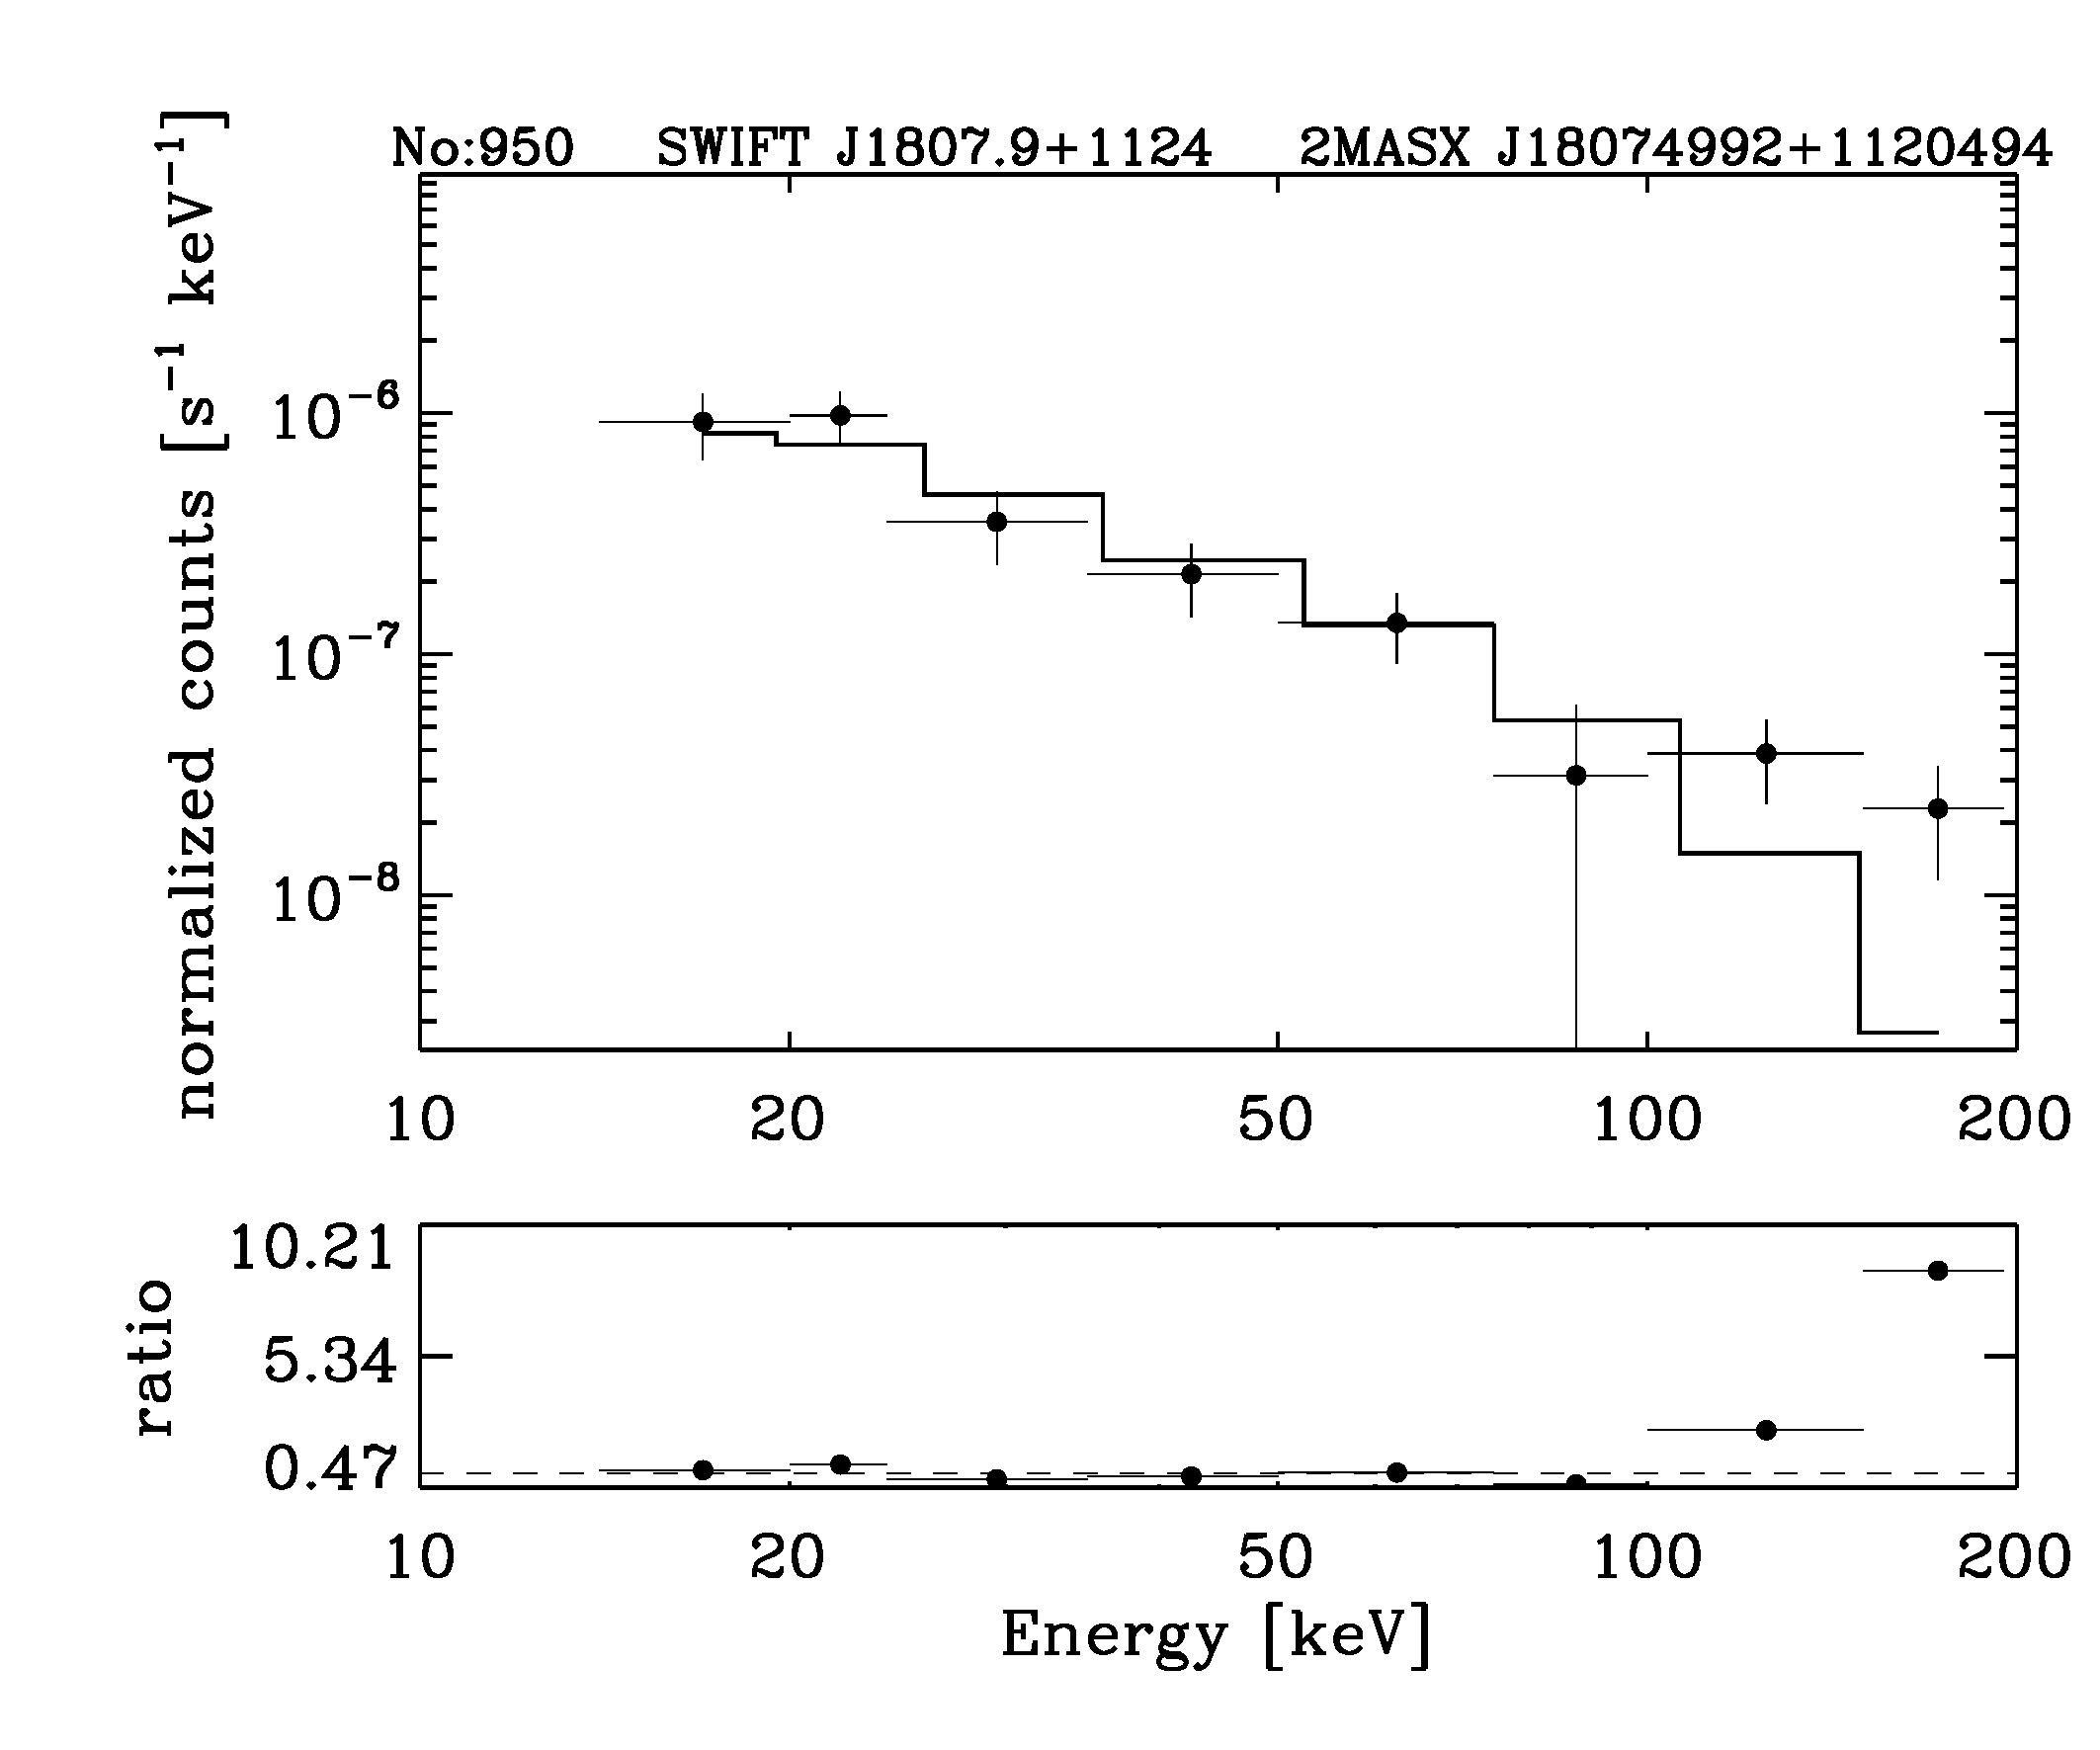 BAT Spectrum for SWIFT J1807.9+1124